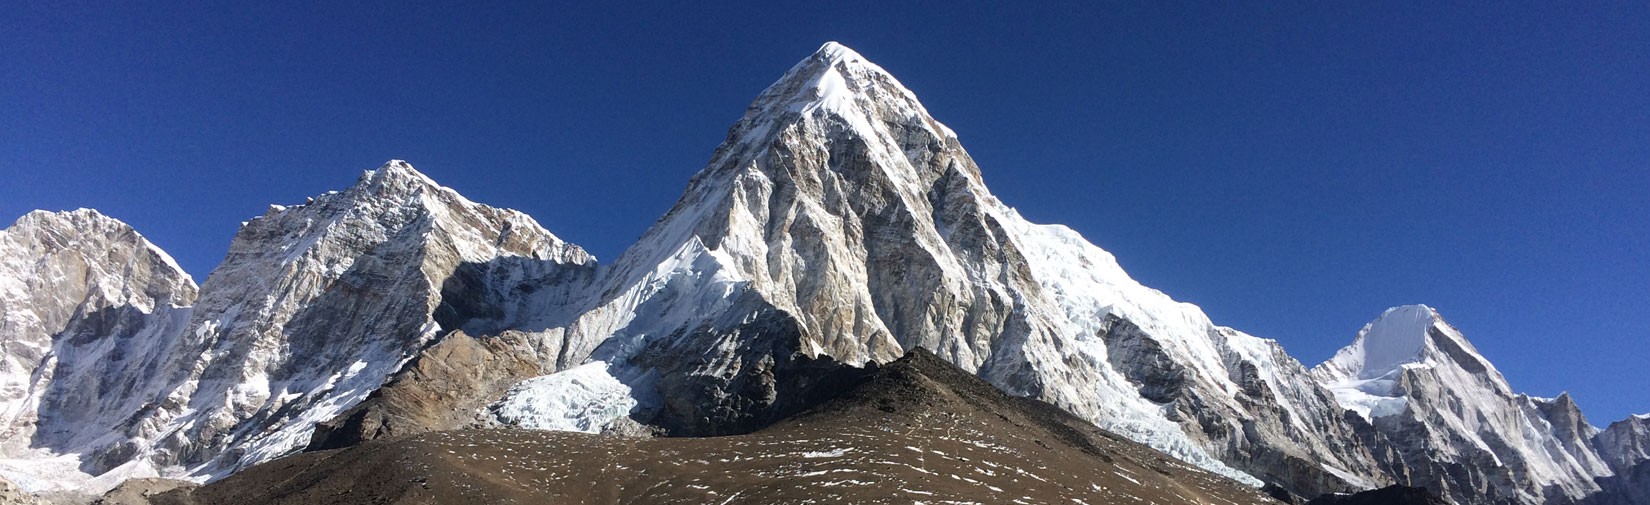 Trekking in Everest Region 